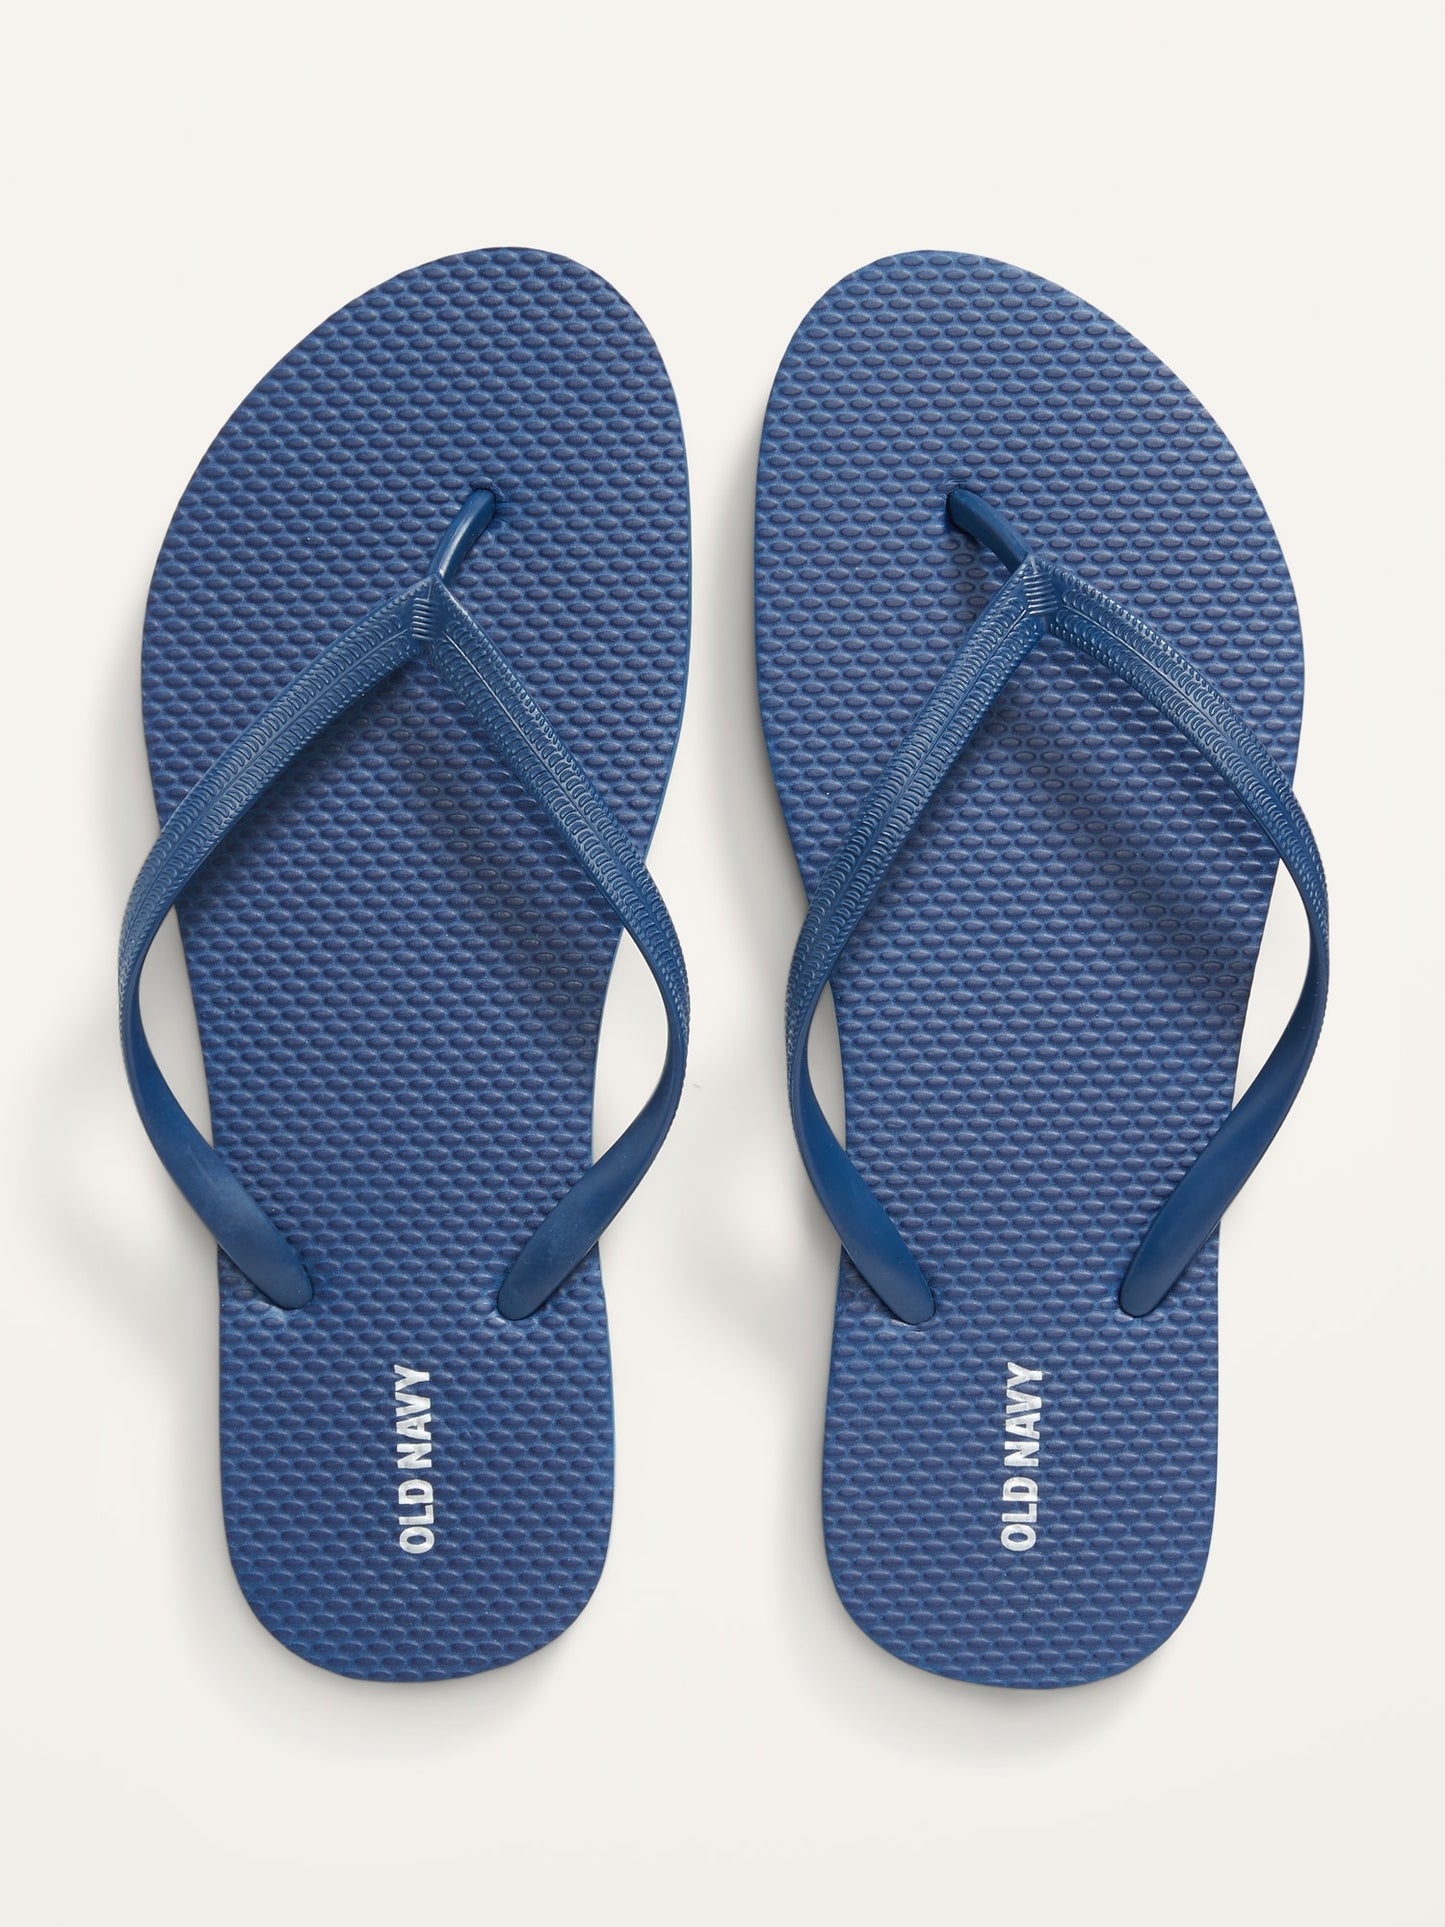 ON Plant-Based Flip-Flop Sandals For Women - Navy Blue